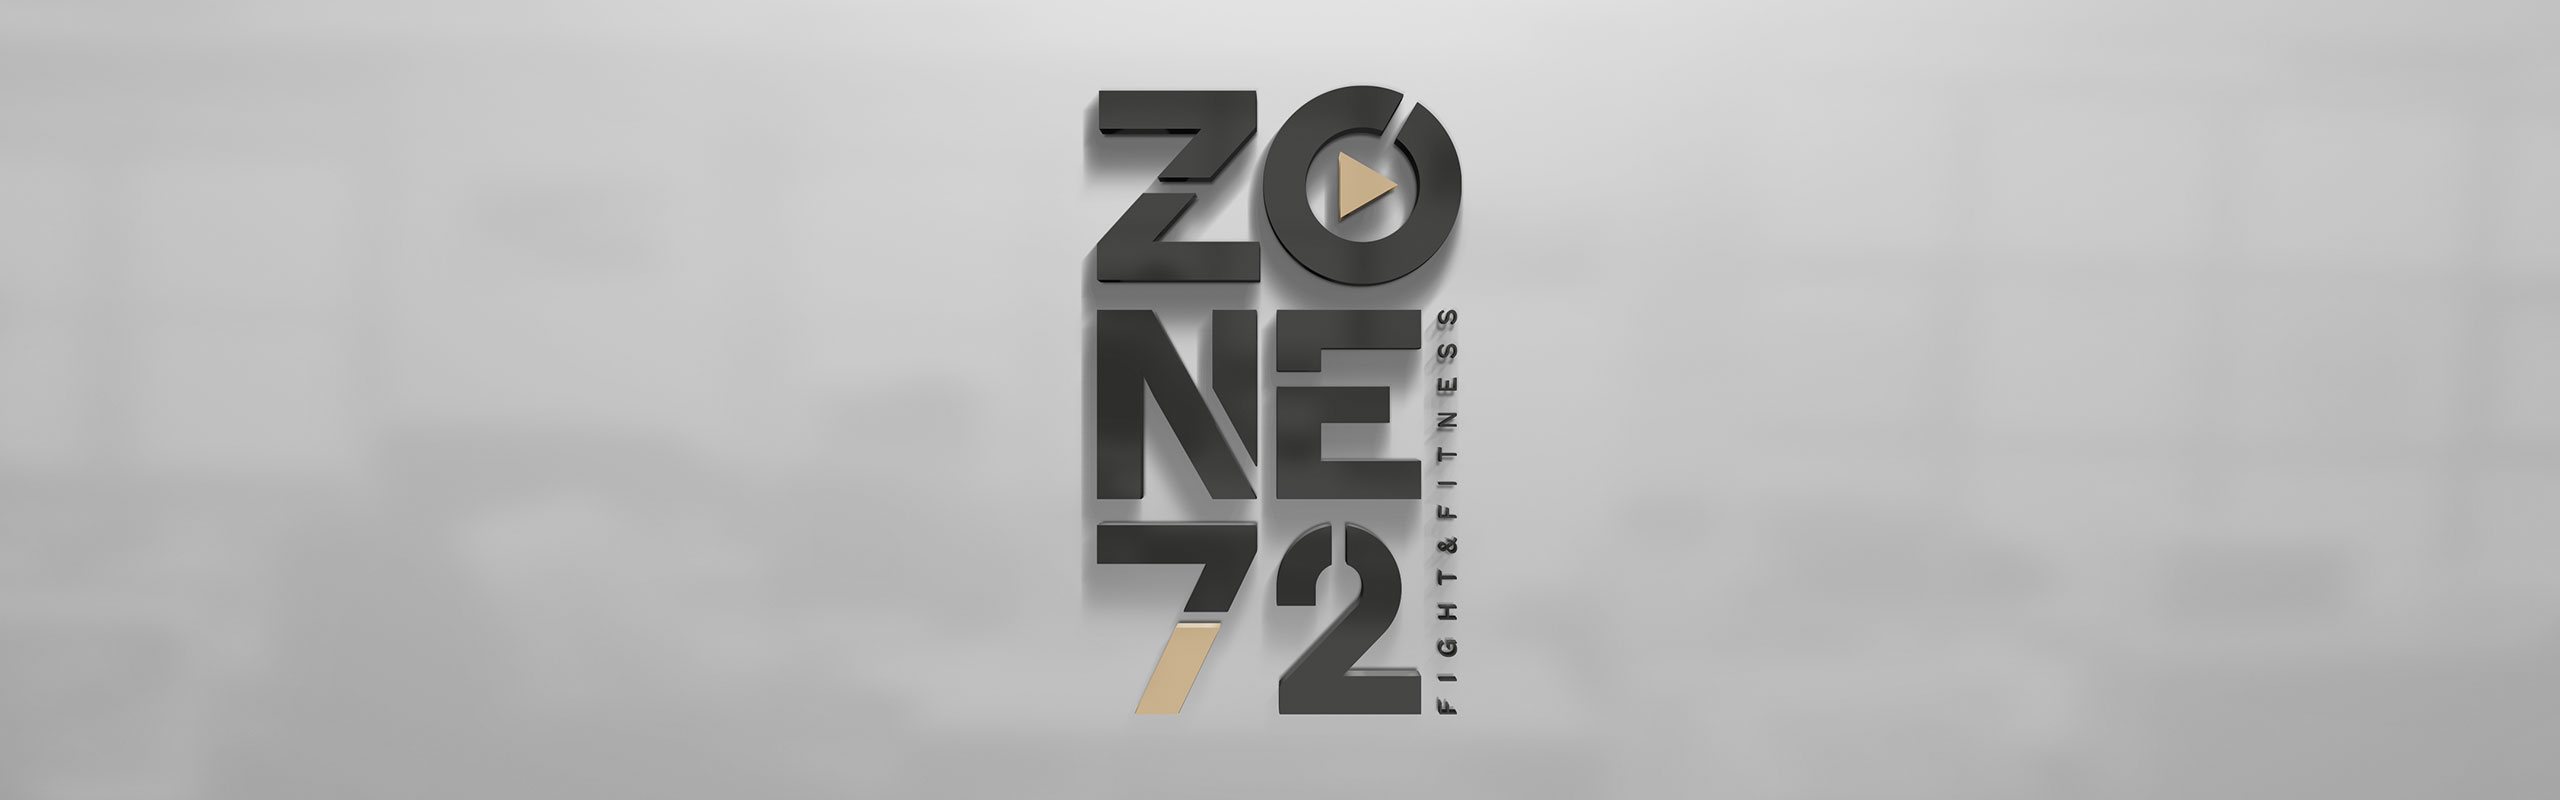 Zone 72 Fitness & Kampfsport Zentrum Logo by Hirschburg Werbeagentur